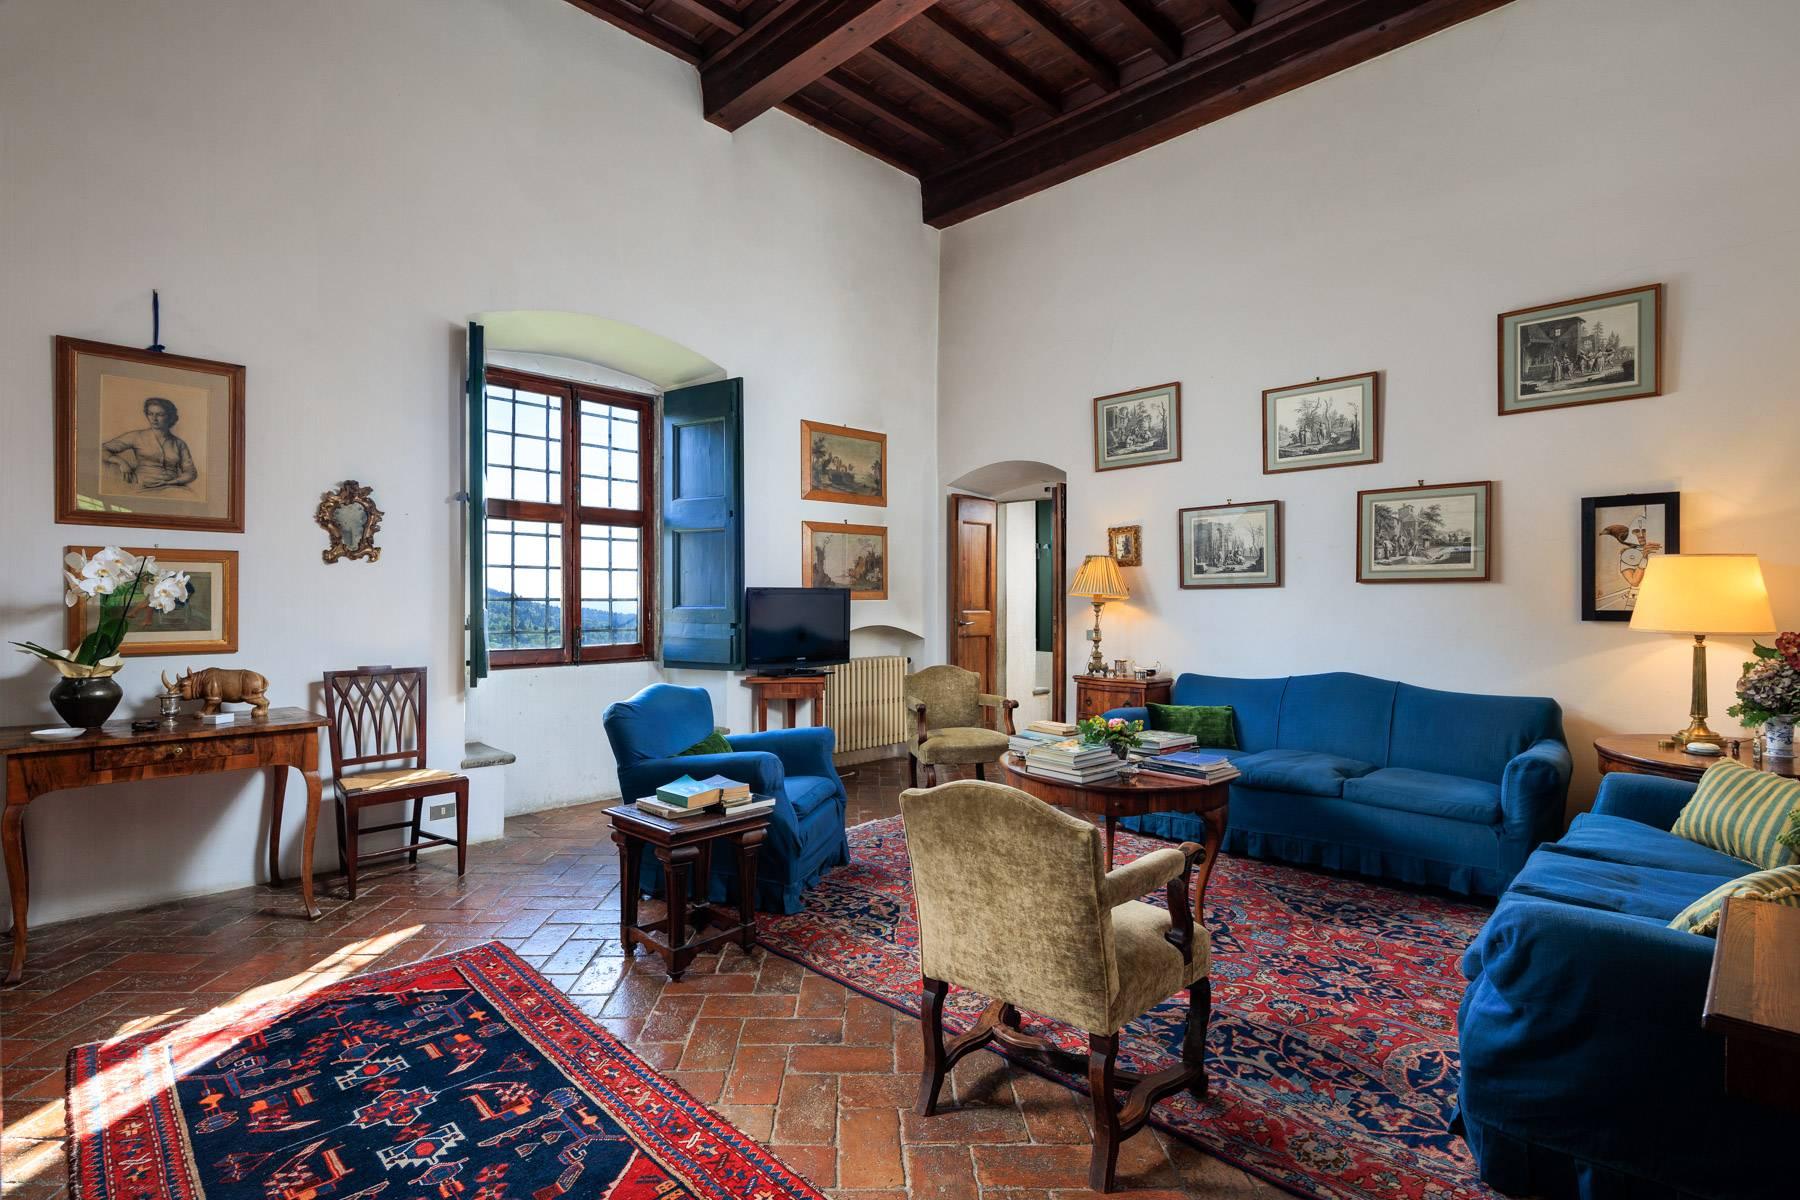 Grande villa padronale d'epoca nella più rinomata zona olearia vicino a Firenze - 11